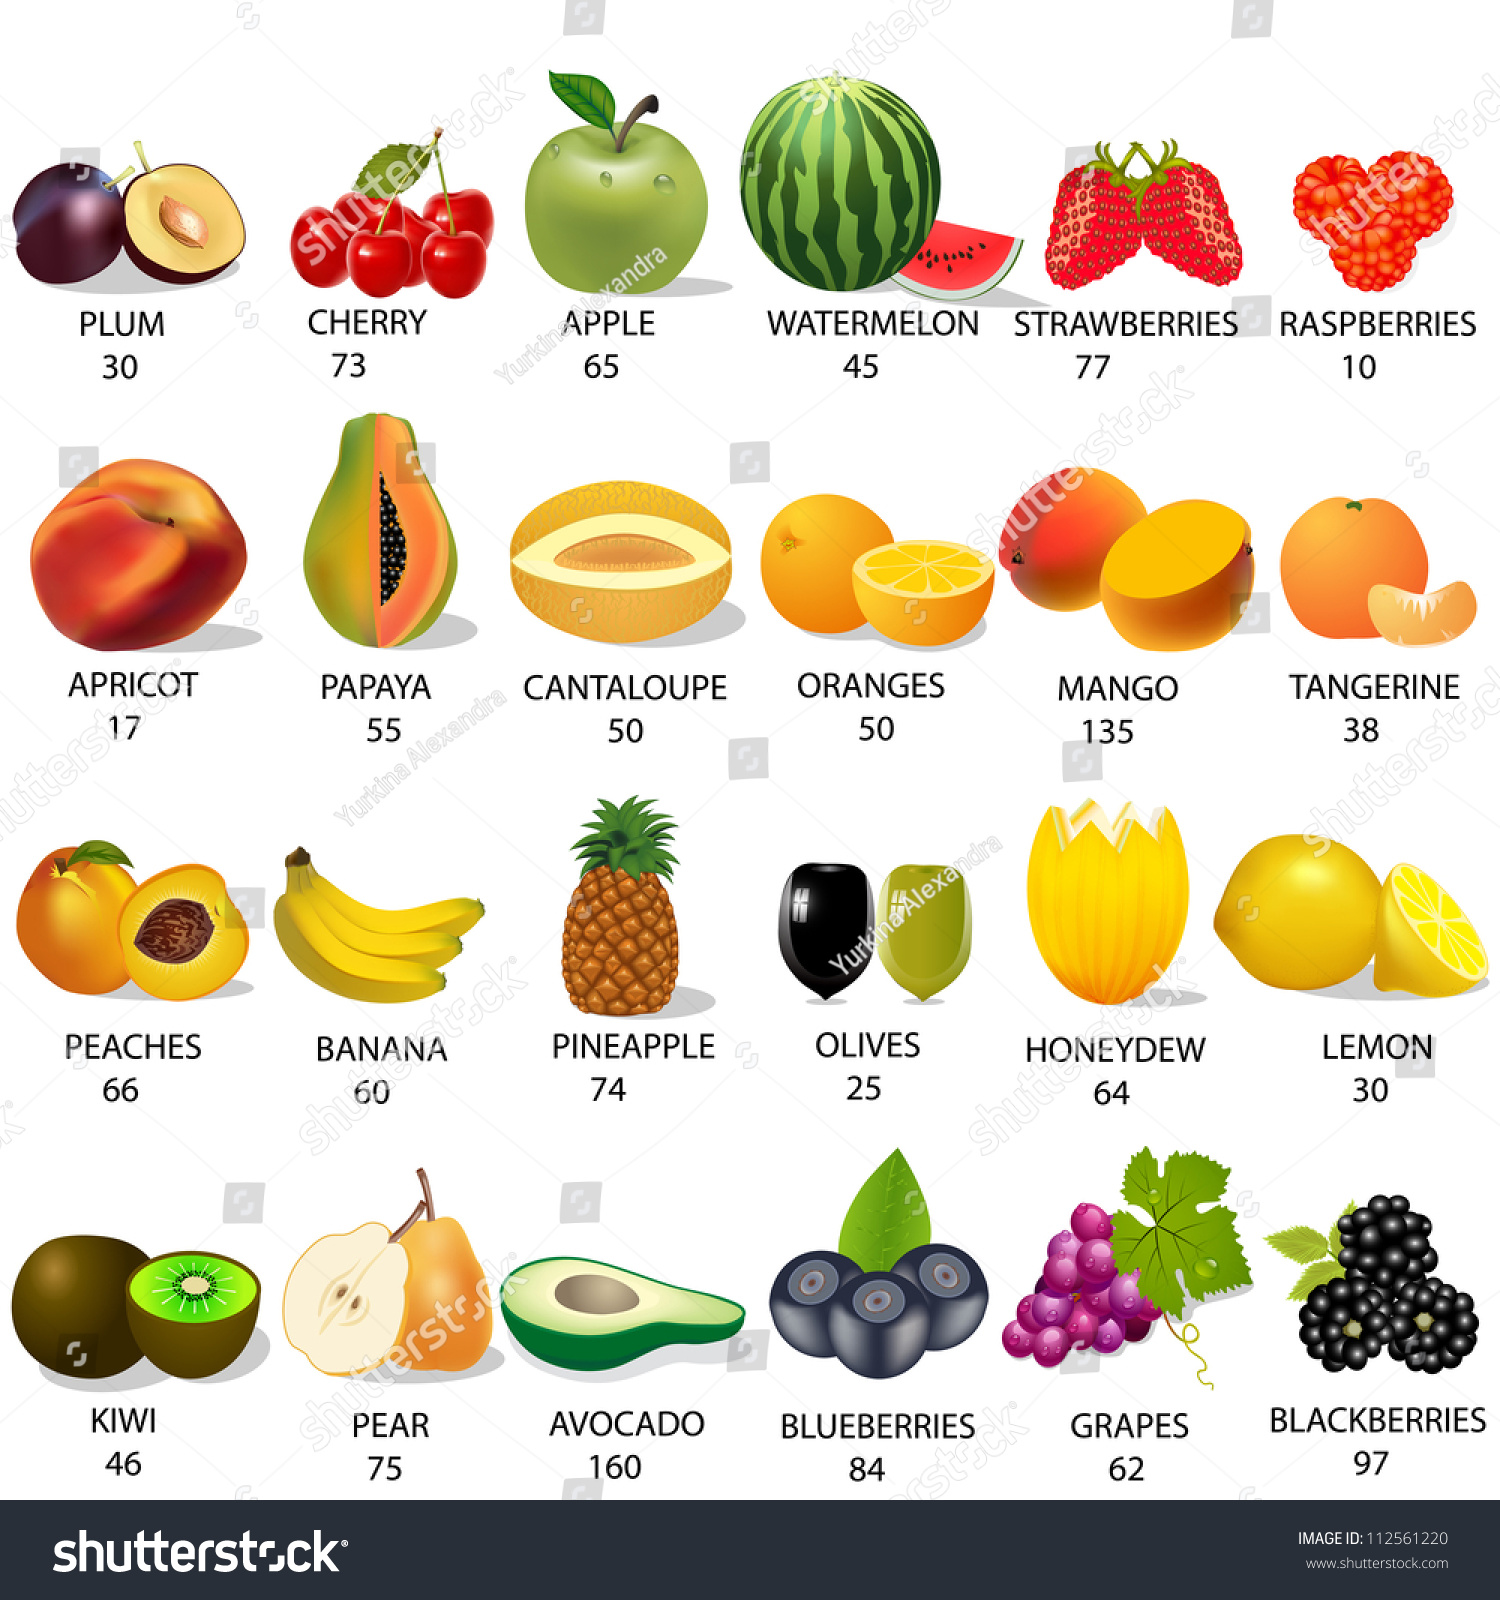 Груша перевод на английский. Самые калорийные фрукты и ягоды. Калории в фруктах. Самые низкокалорийные фрукты и ягоды. Ккал фруктов.